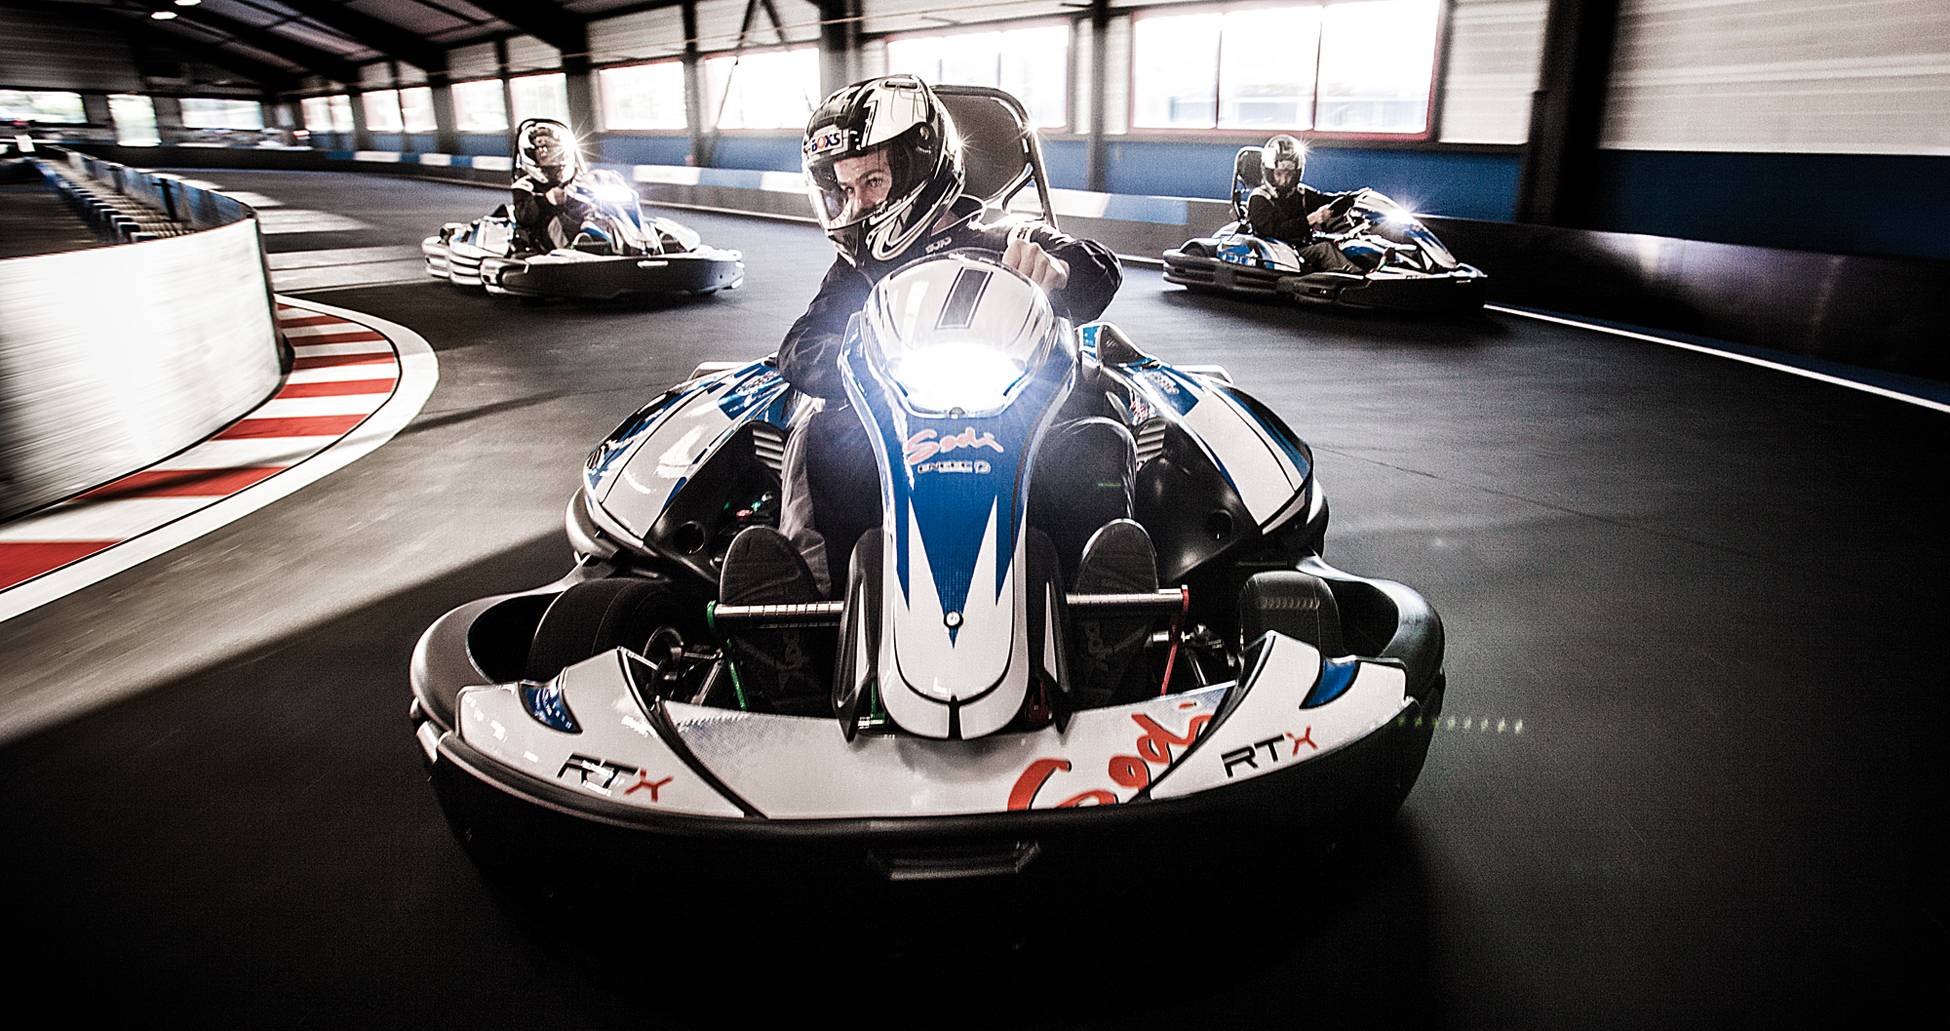 Le karting électrique pourrait arriver aux Jeux Olympiques